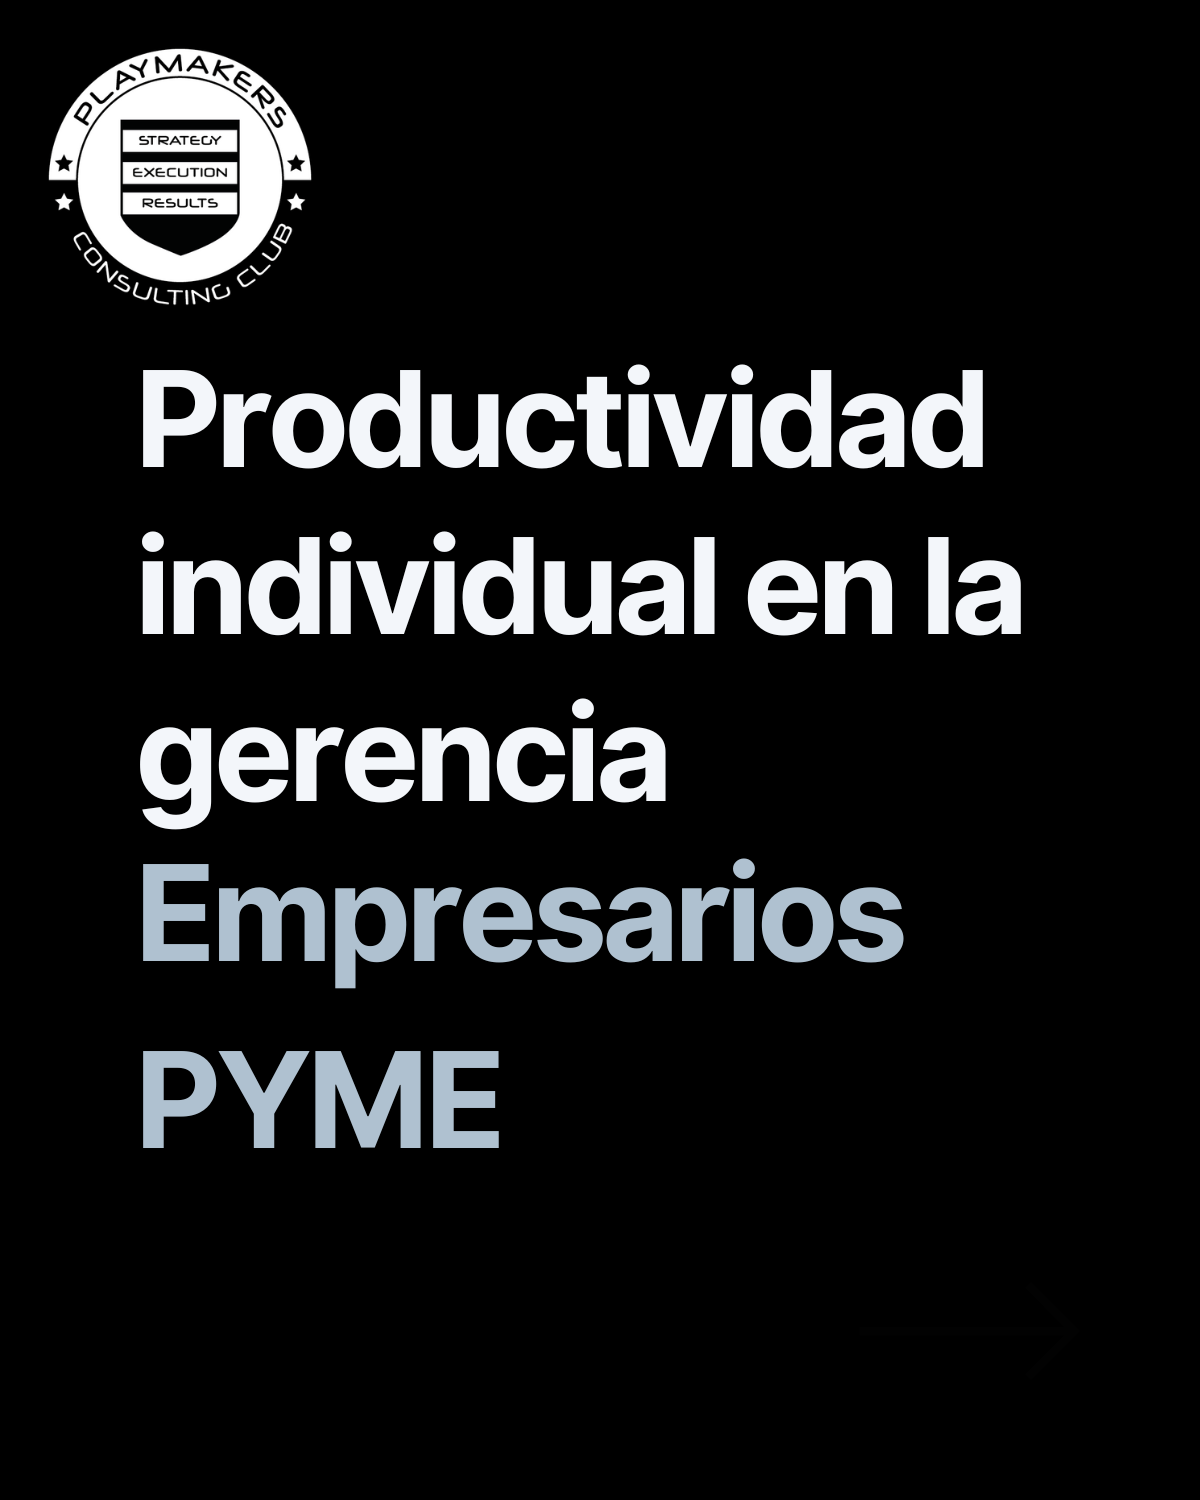 Productividad individual en la gerencia para empresarios pyme en España